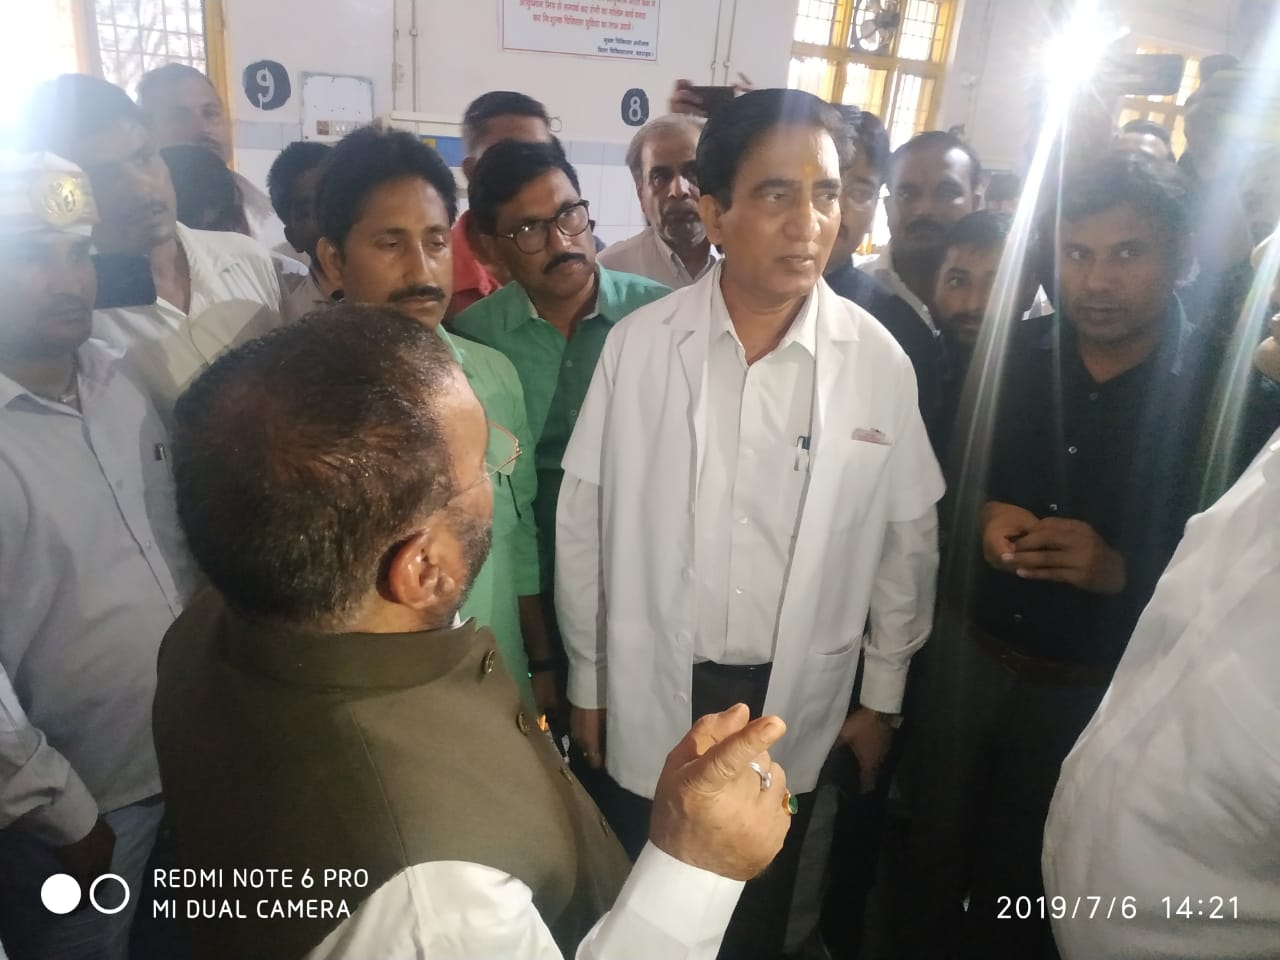 प्रभारी मंत्री स्वामी प्रसाद मौर्य ने किया जिला चिकित्सालय का औचक निरीक्षण | New India Times